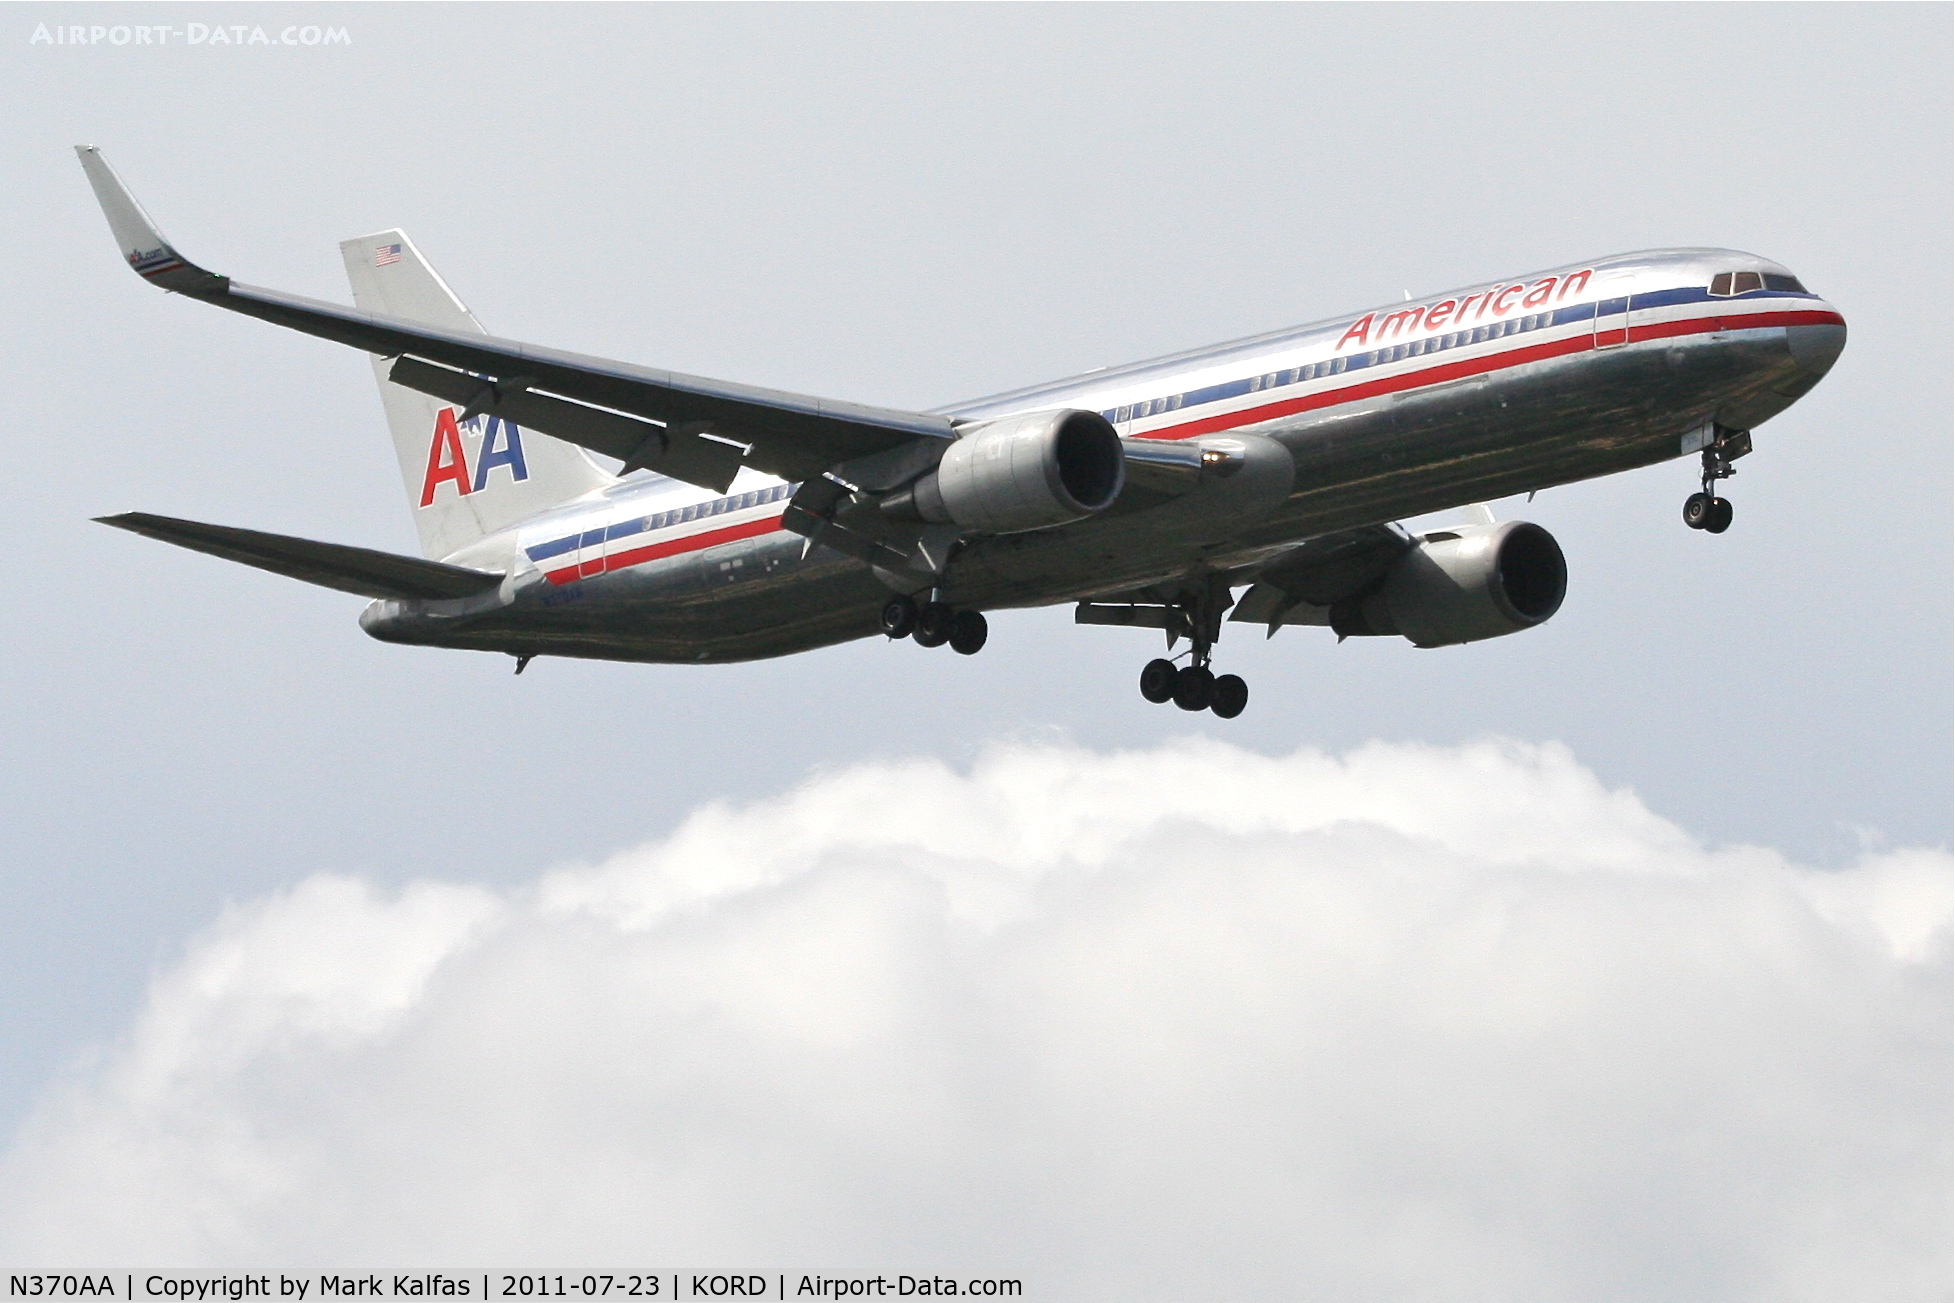 N370AA, 1992 Boeing 767-323 C/N 25197, American Airlines N370AA on approach RWY 10 KORD.